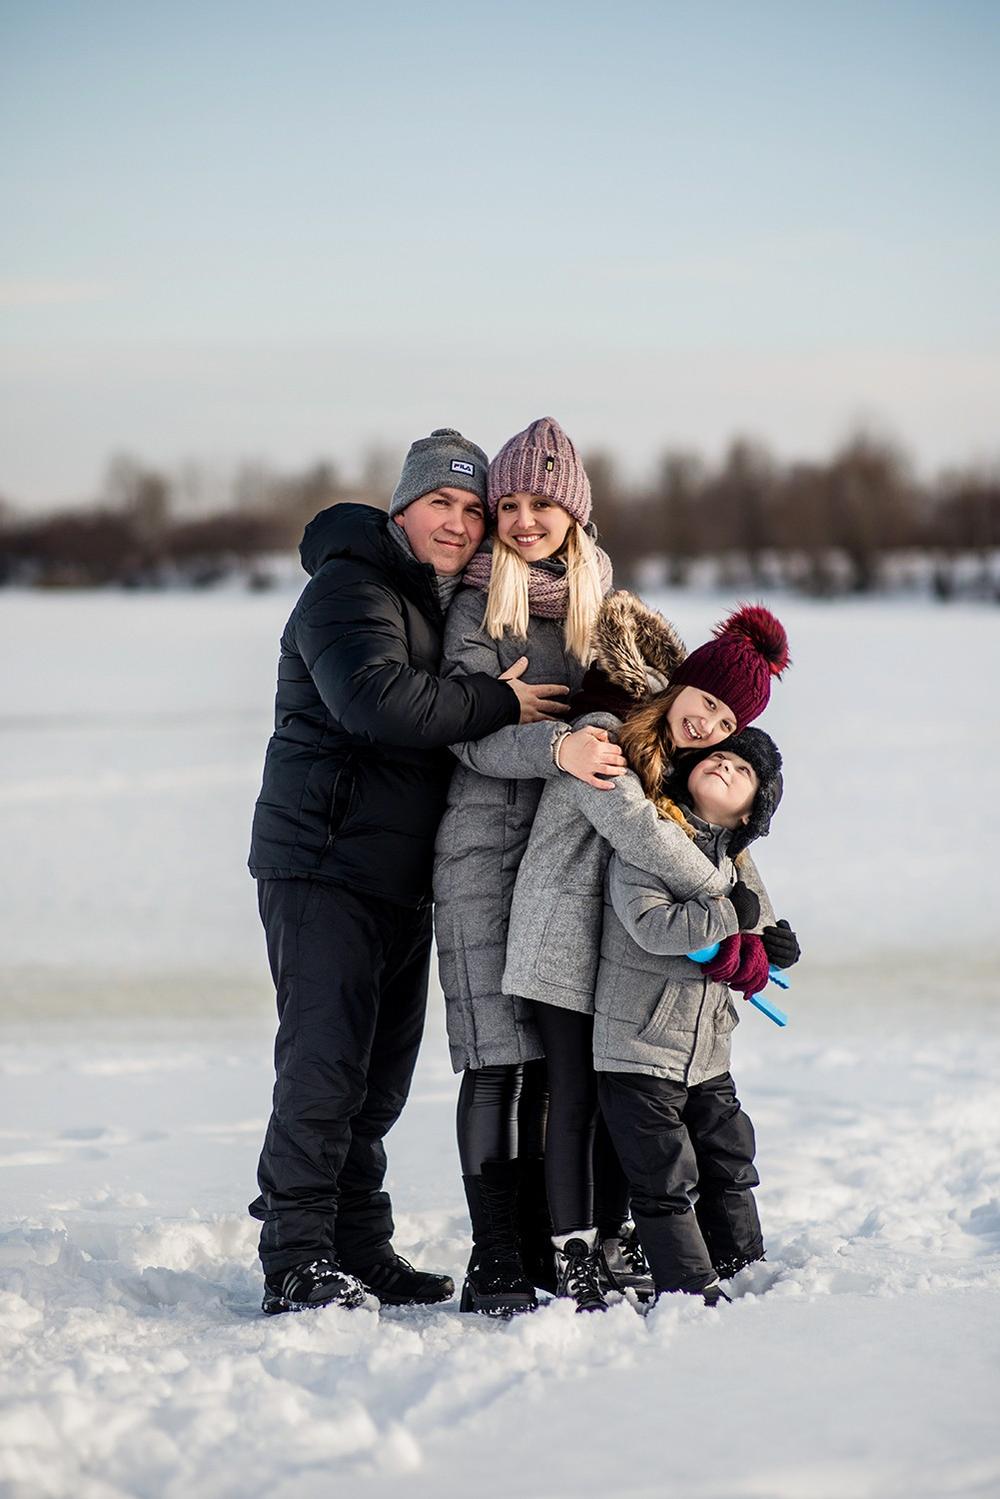 Семейные фотосессии - Снежная прогулка